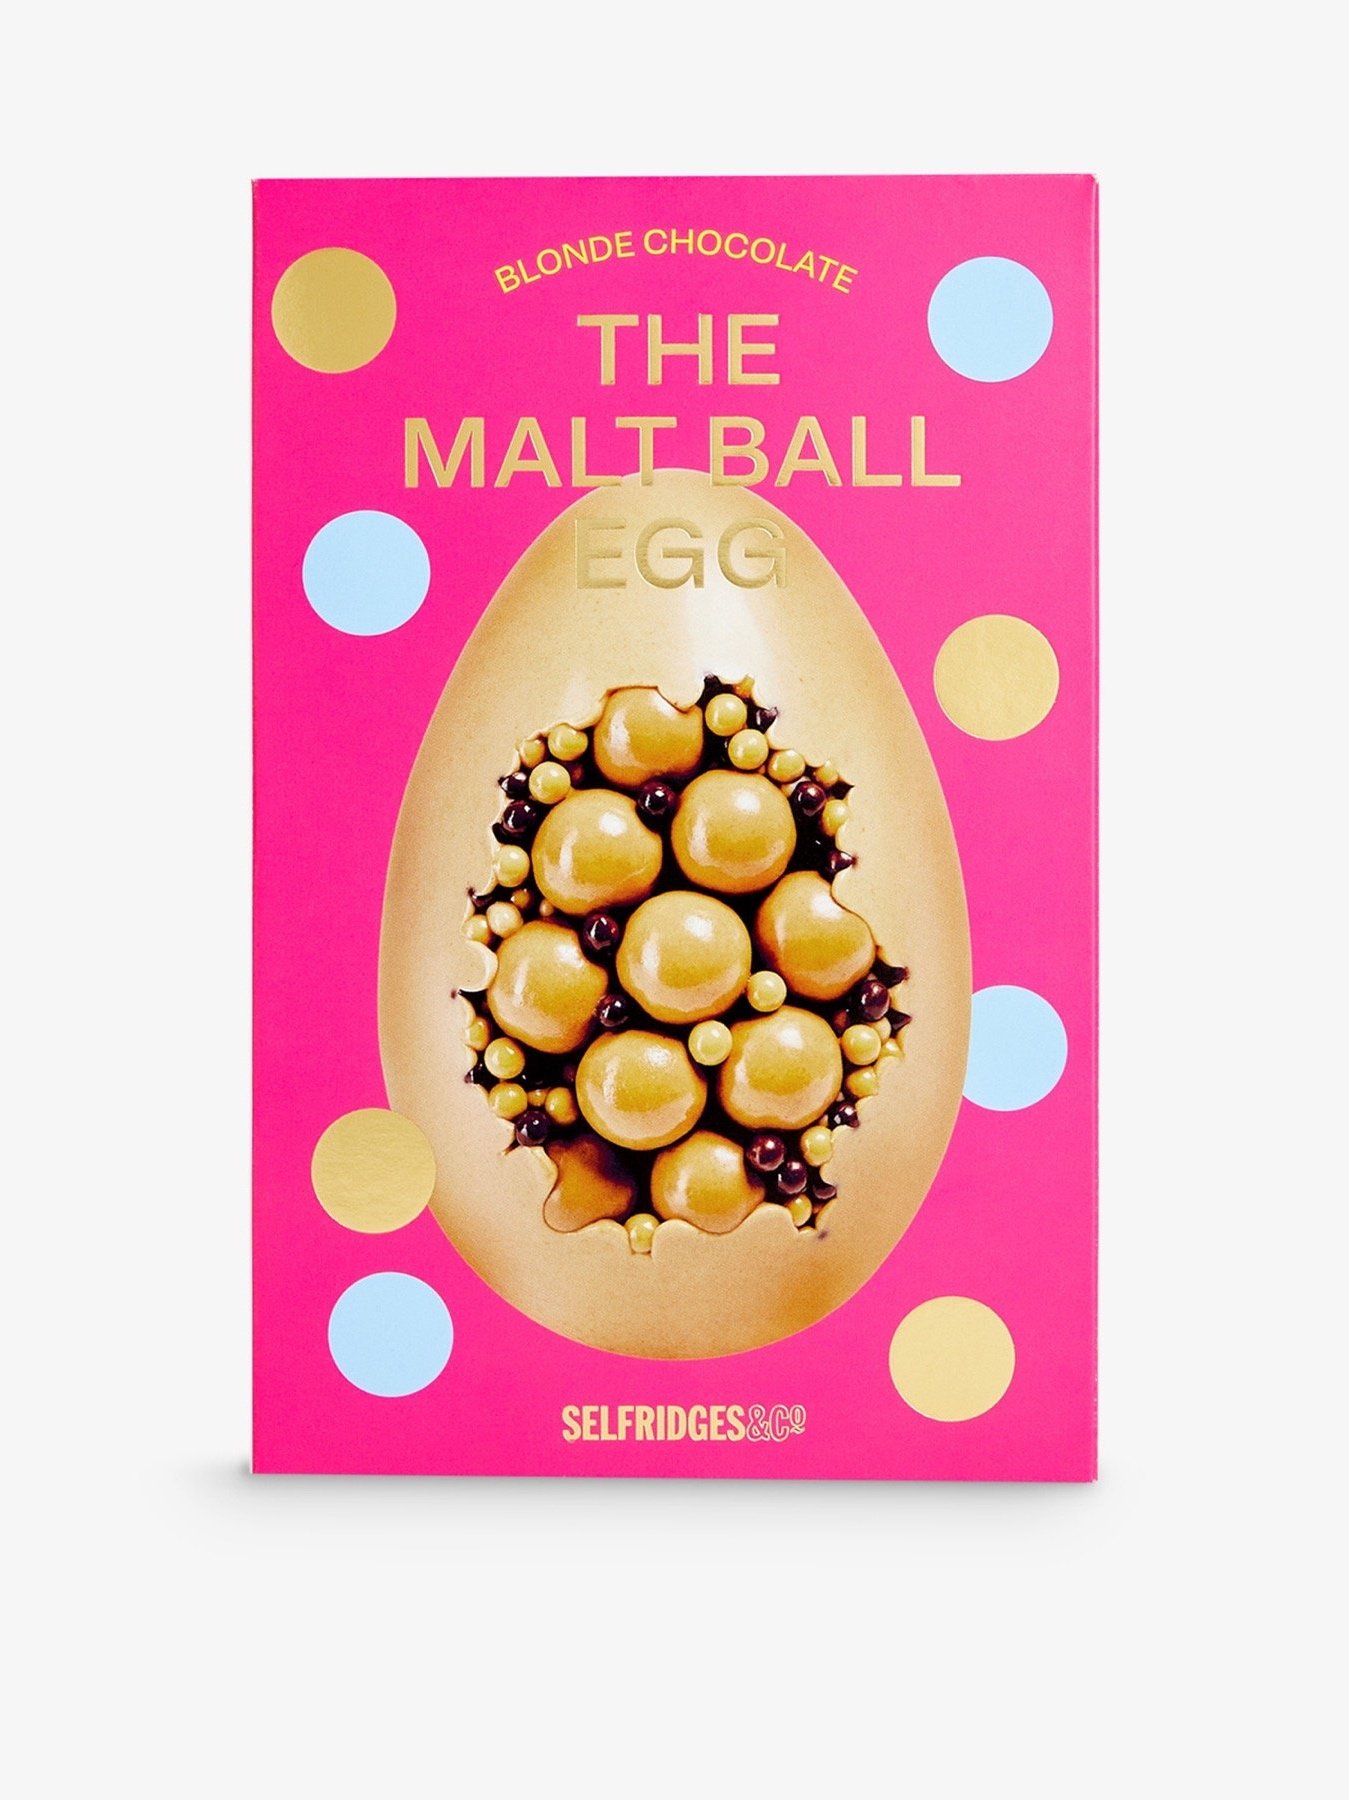 SELFRIDGES+SELECTION+The+Malt+Ball+Egg+blonde+chocolate+Easter+egg+260g+%C2%A322.99.jpg